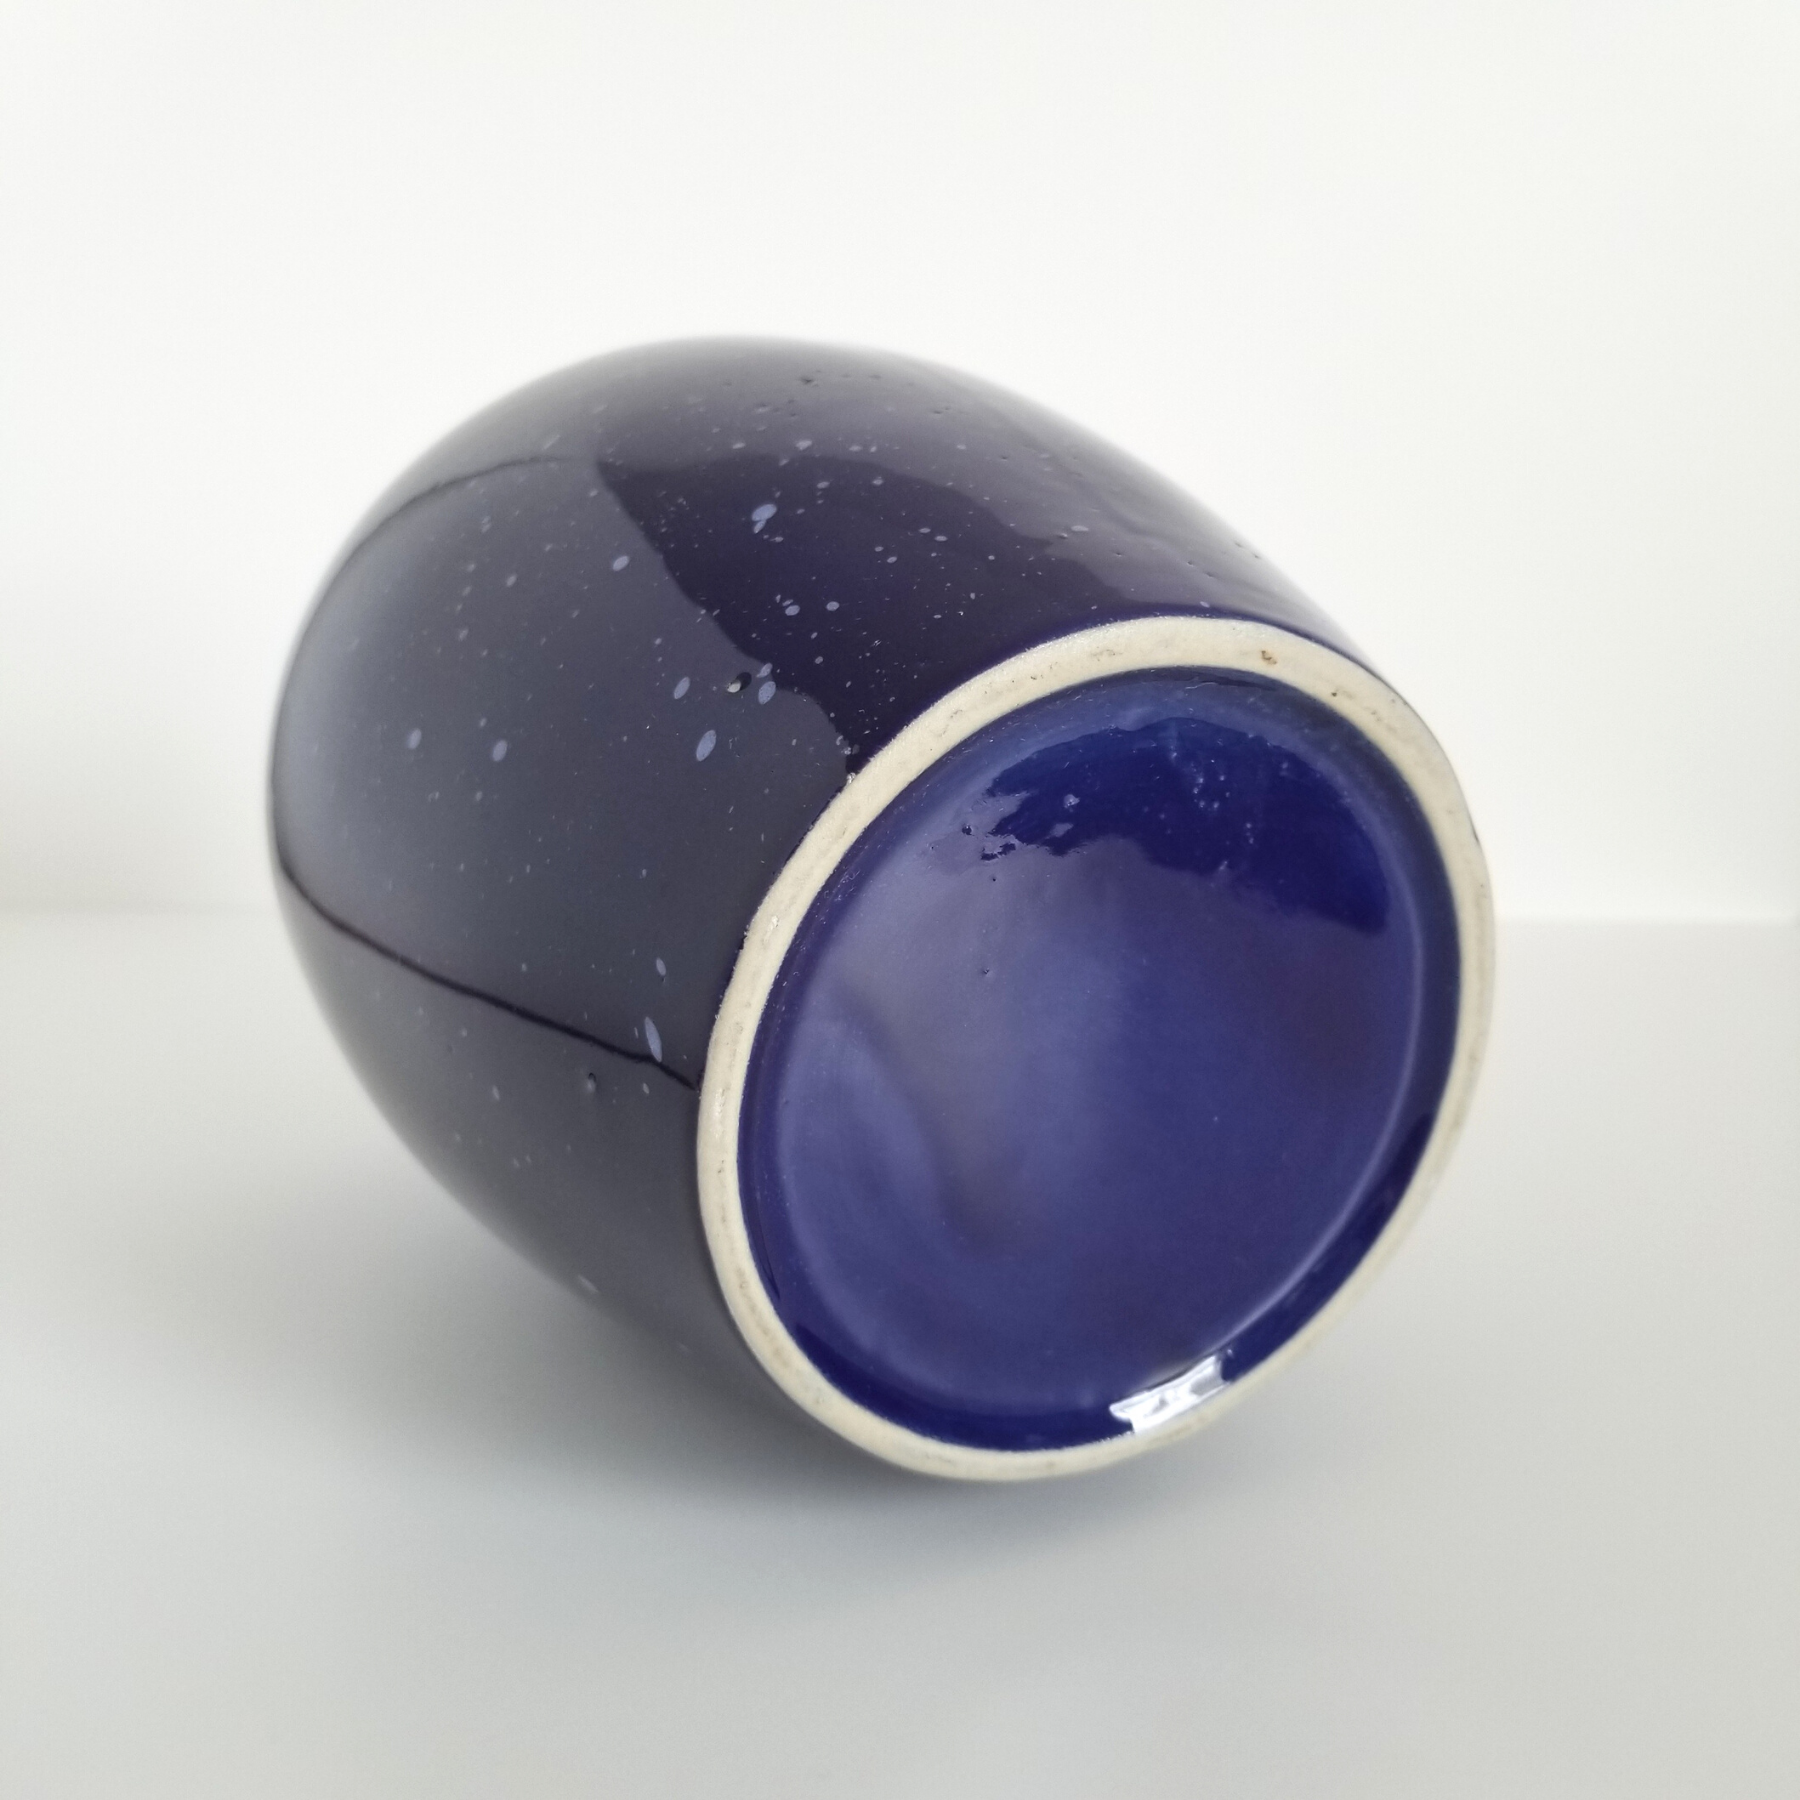 Blue Speckled Vase Bottom